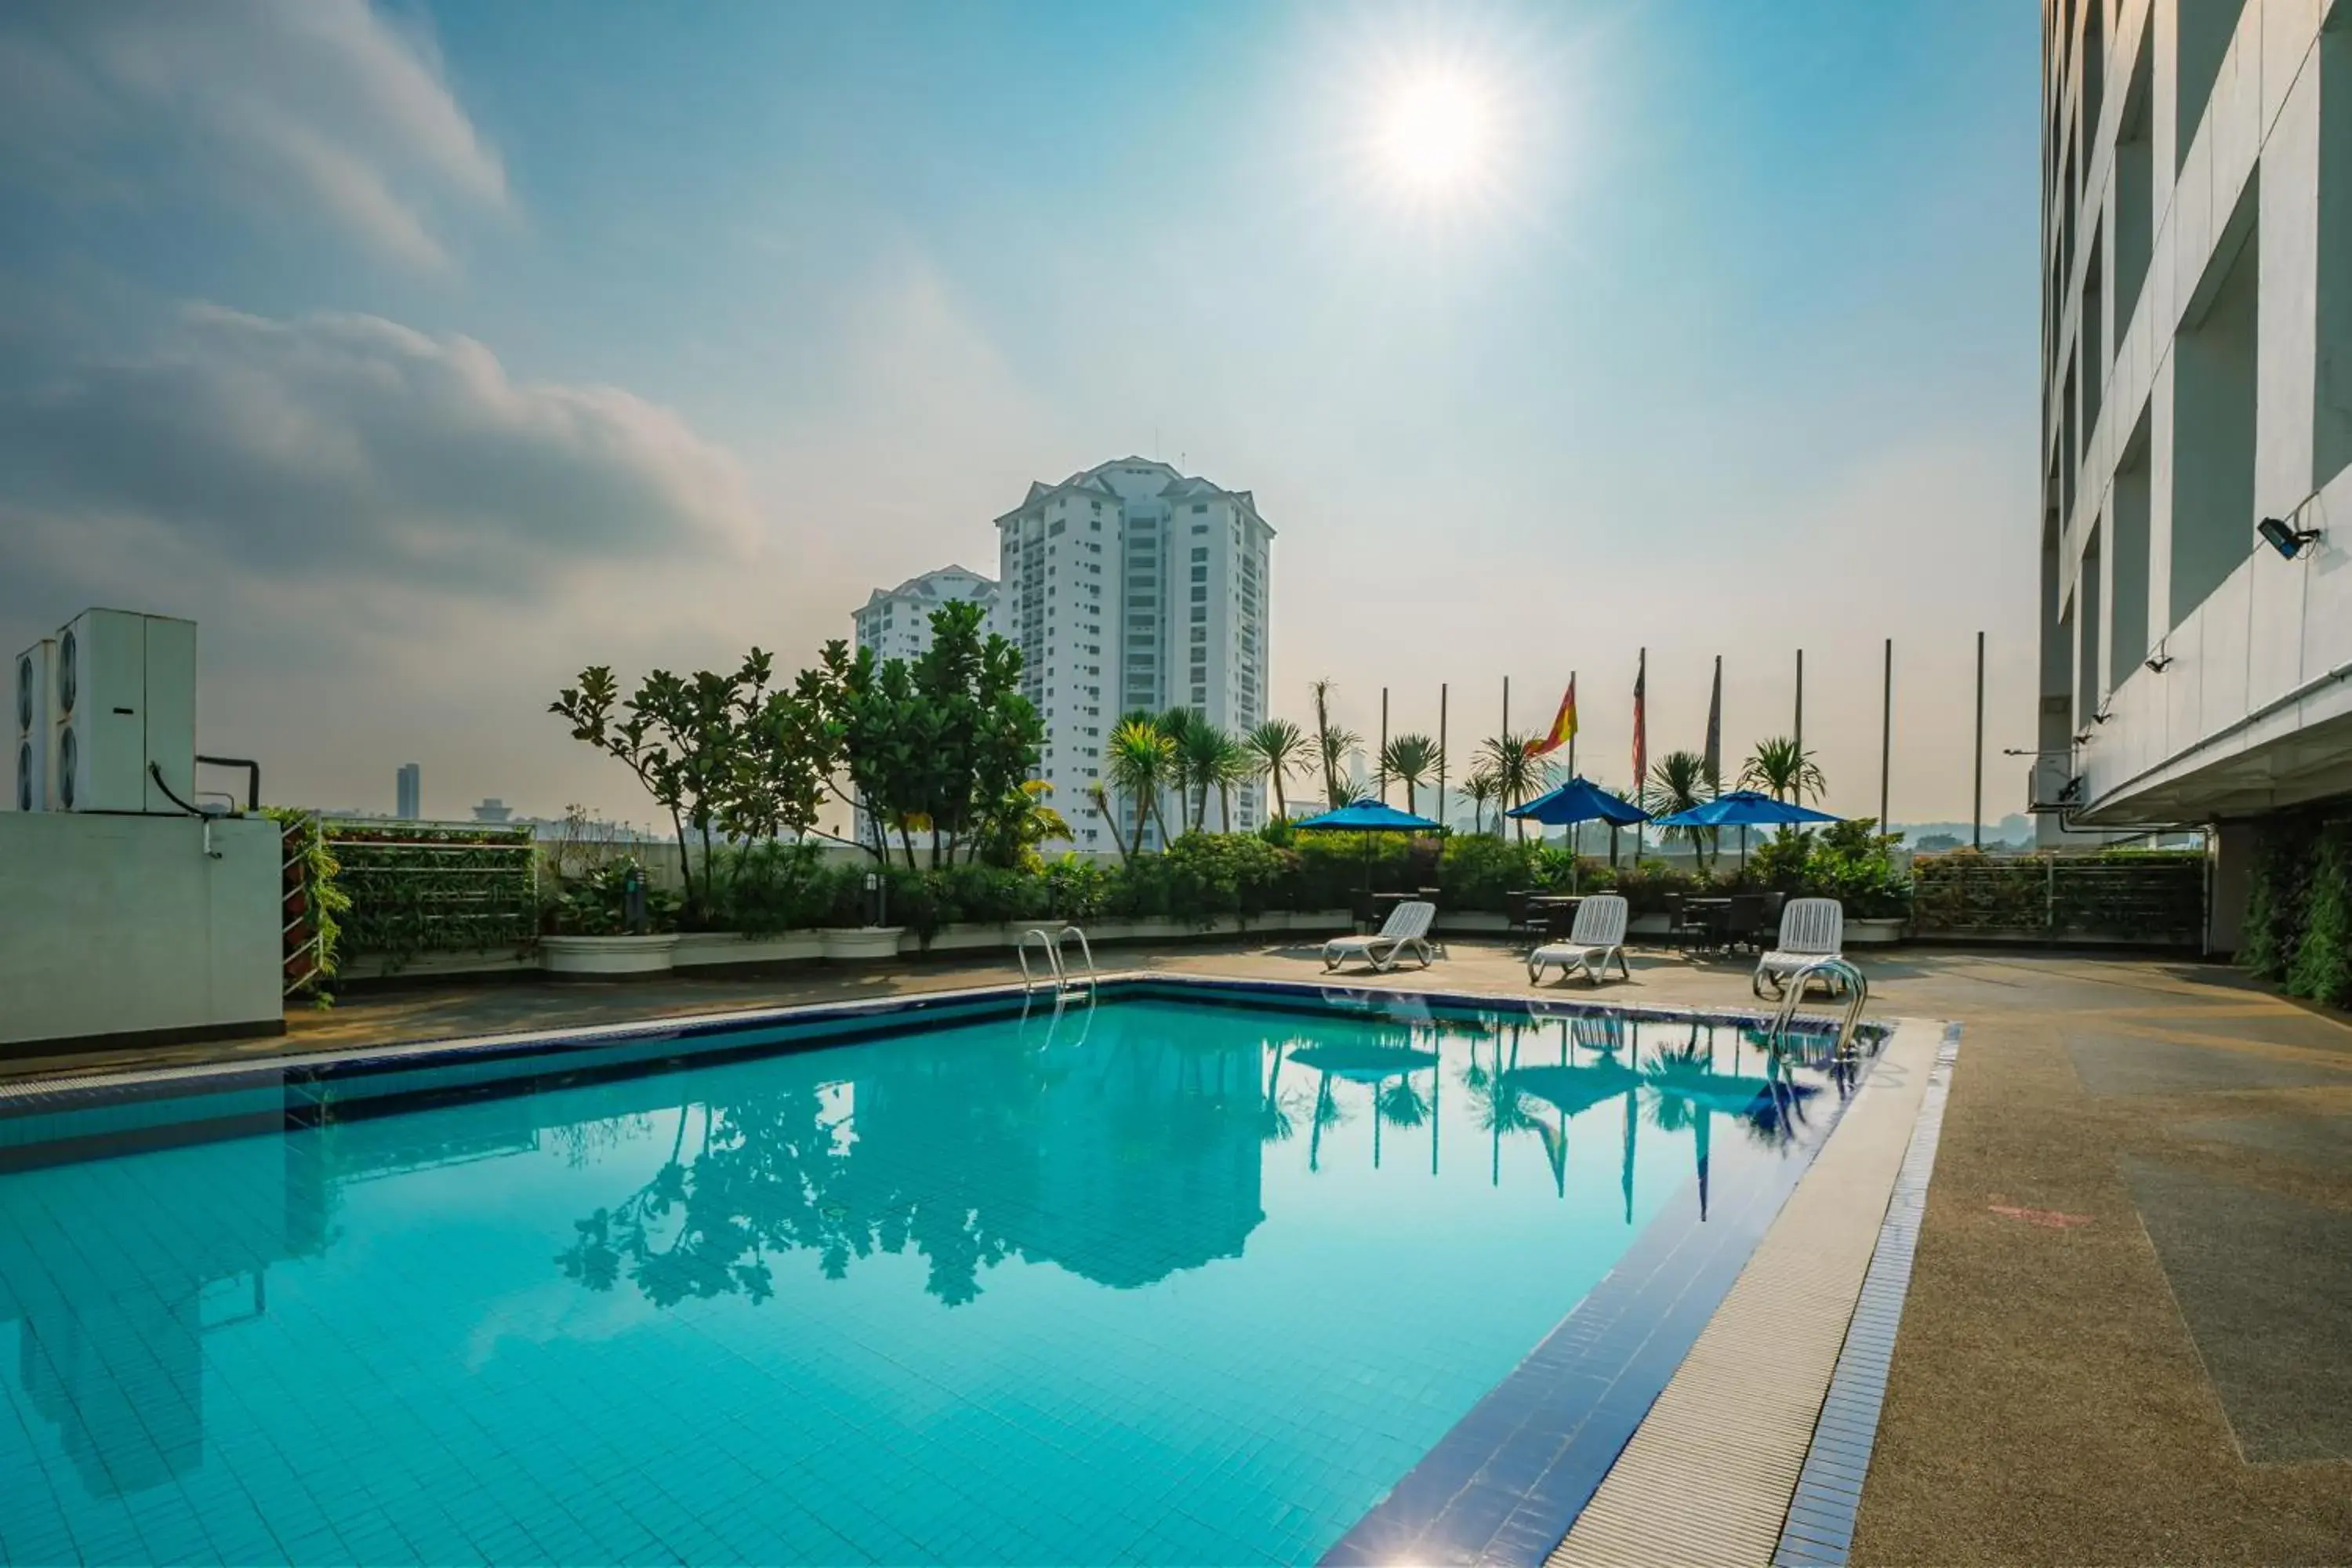 Swimming Pool in Crystal Crown Hotel Petaling Jaya